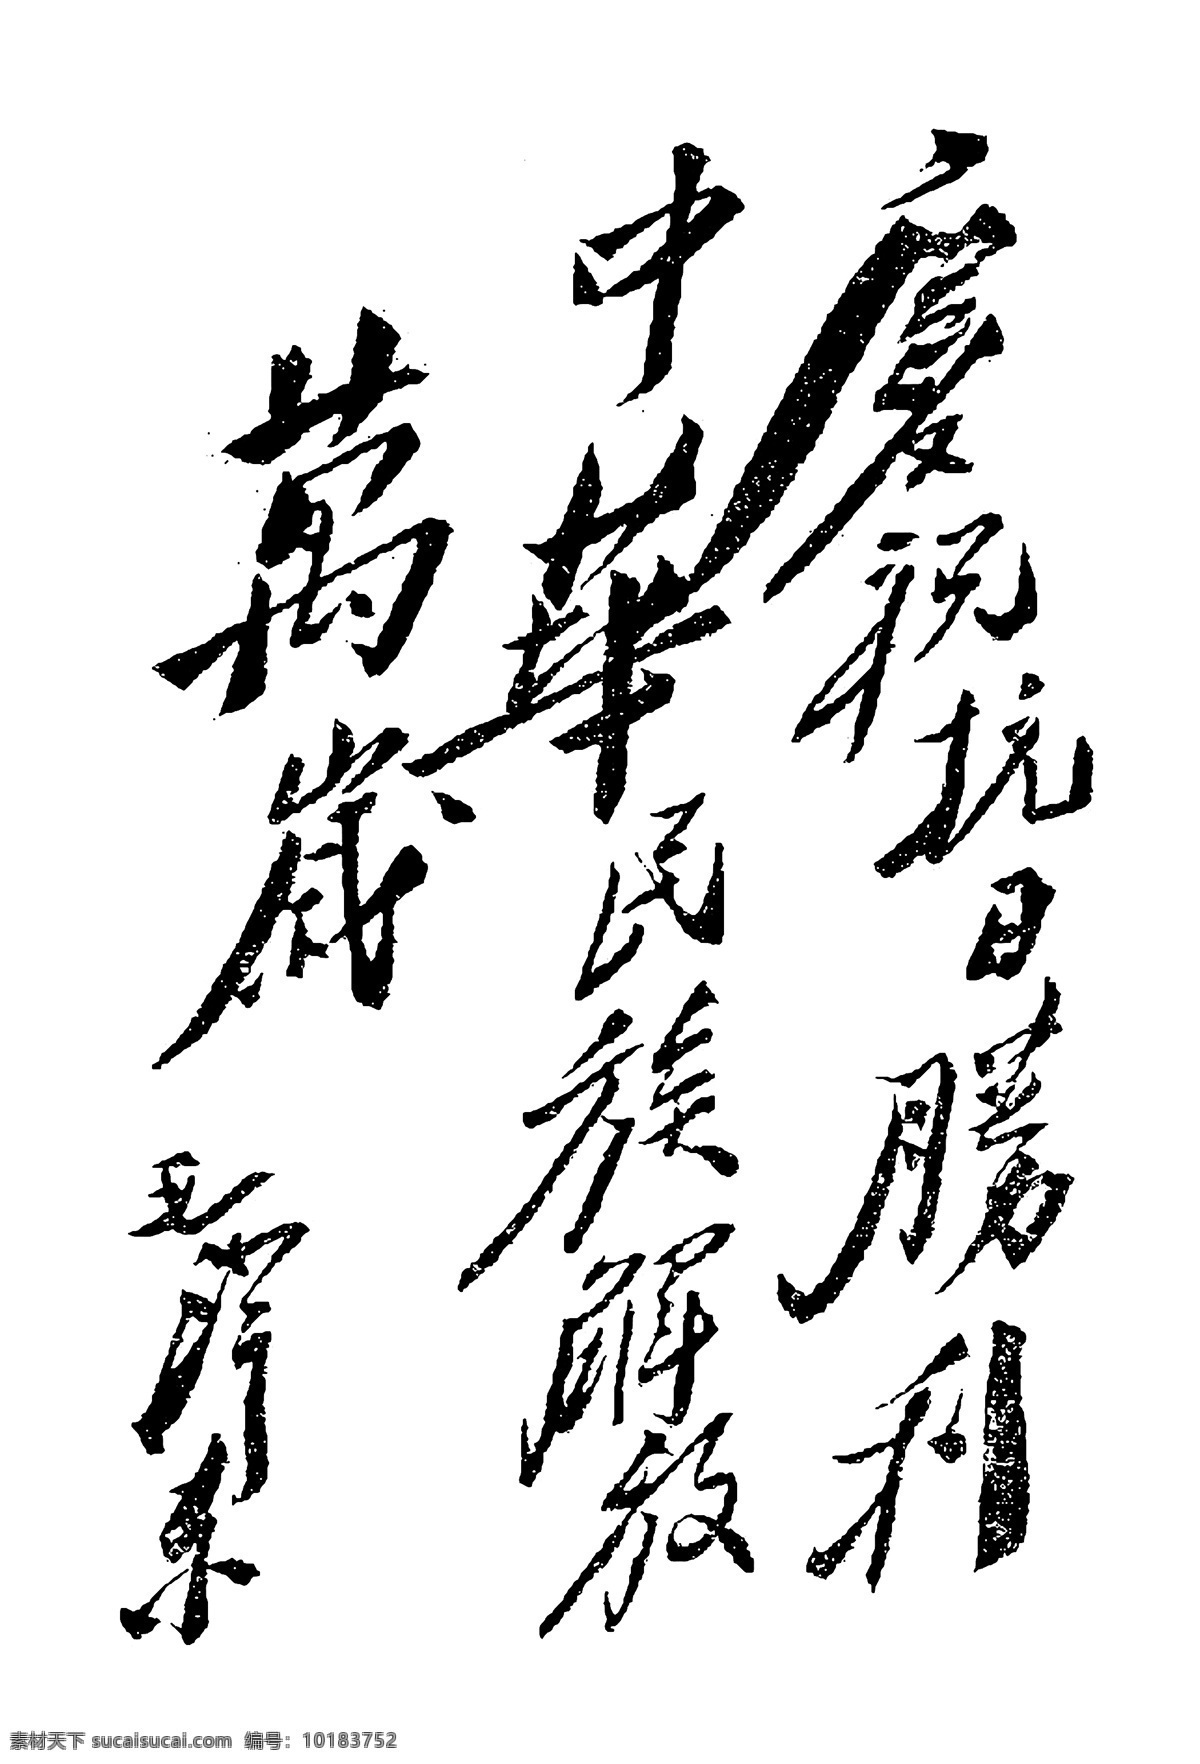 伟人名作 毛泽东 书法作品 伟 设计素材 毛泽东篇 书法世界 书画美术 白色